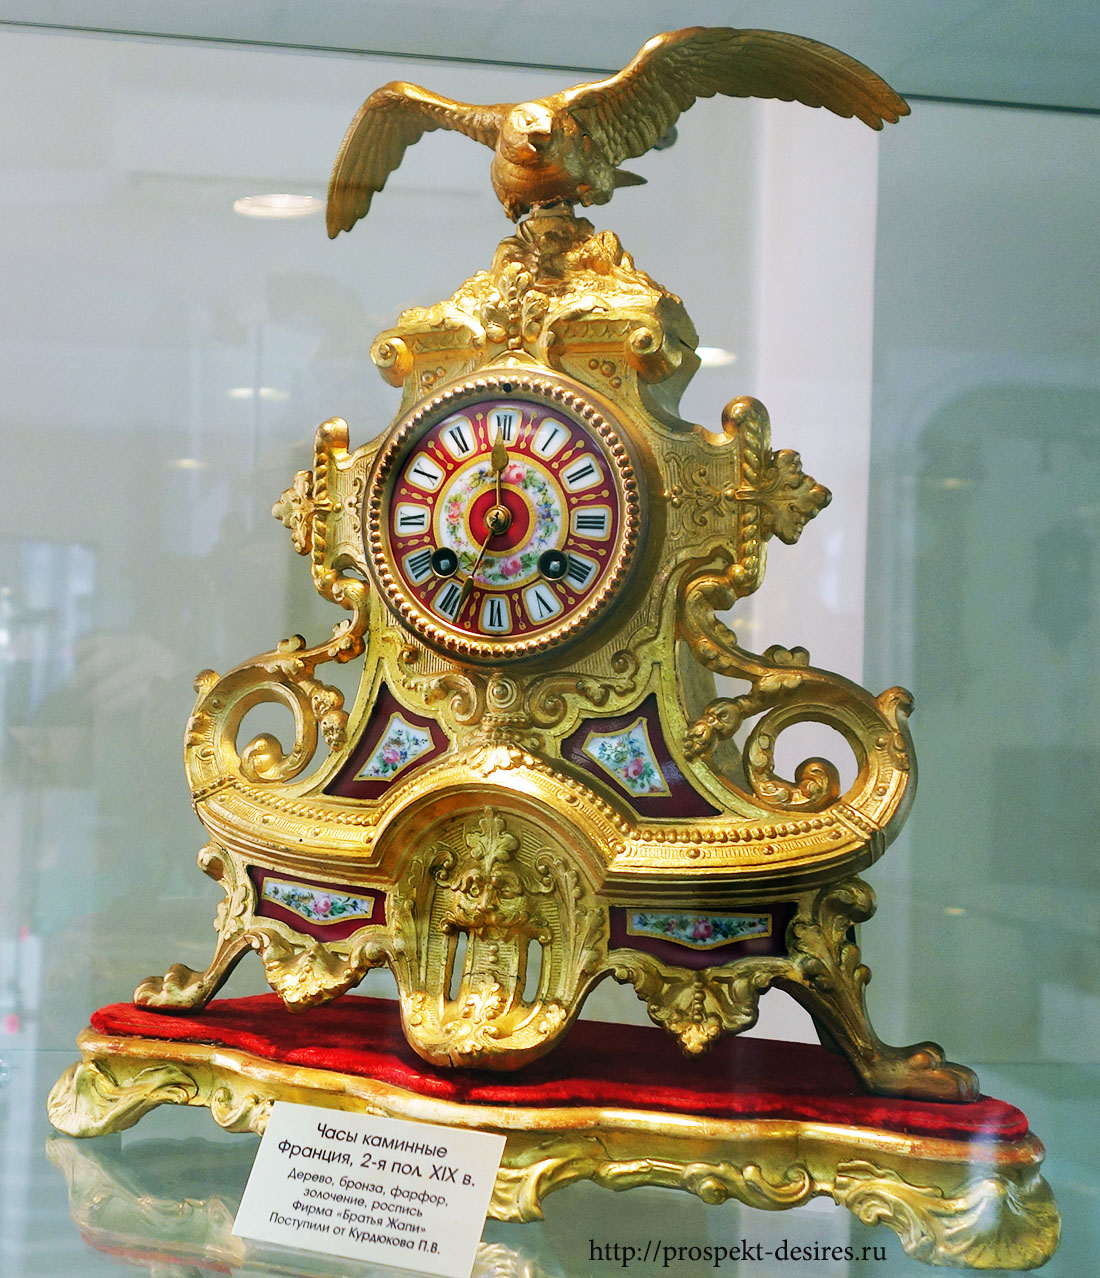 Выставка часов спб. Музей часов Ангарск. Часы каминные Франция 19 век. Часы каминные Афина Паллада. Настольные часы музейные.